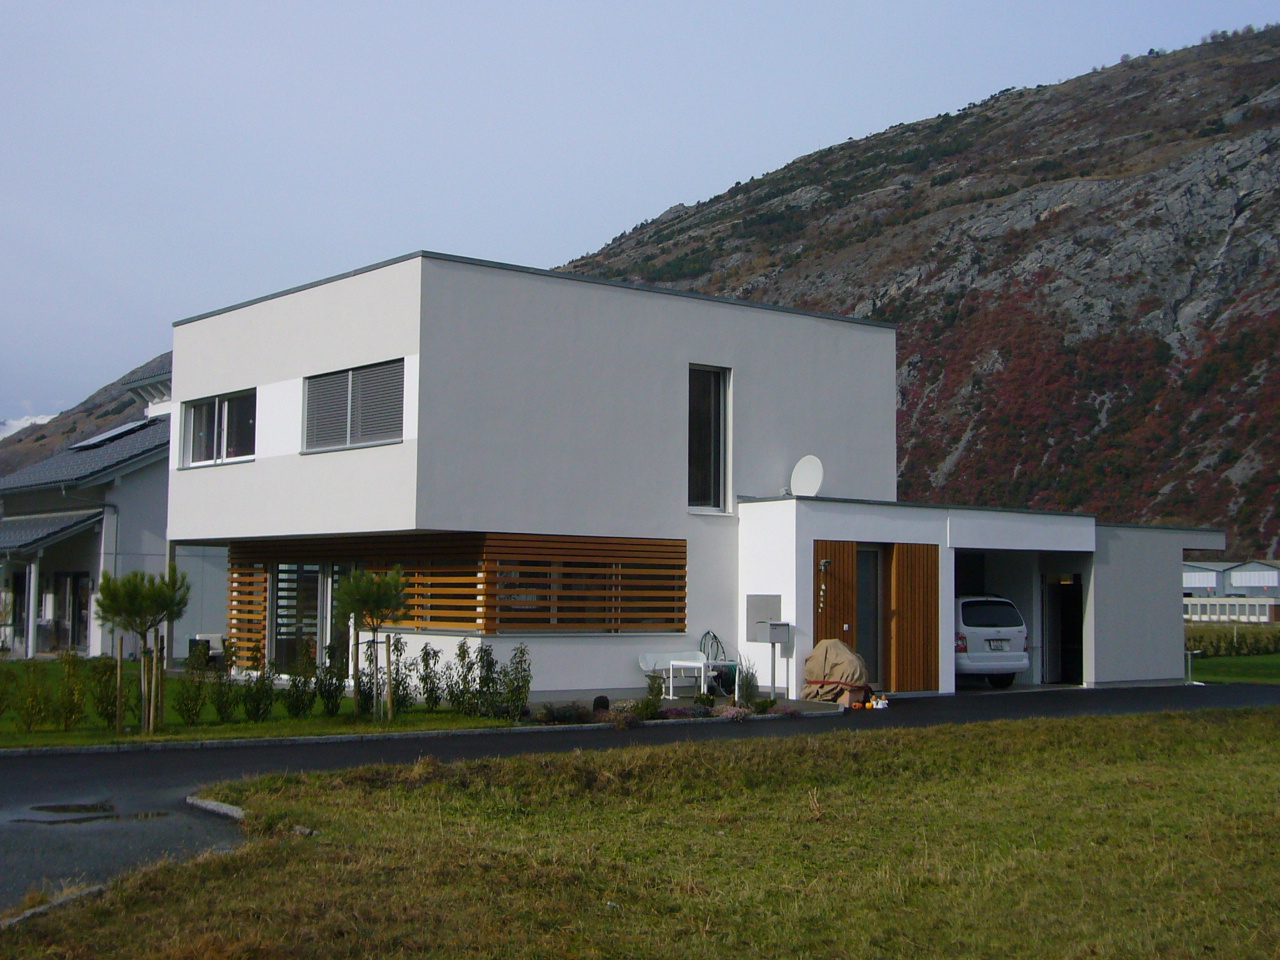 2 Einfamilienhäuser Turtmann 2007/2008